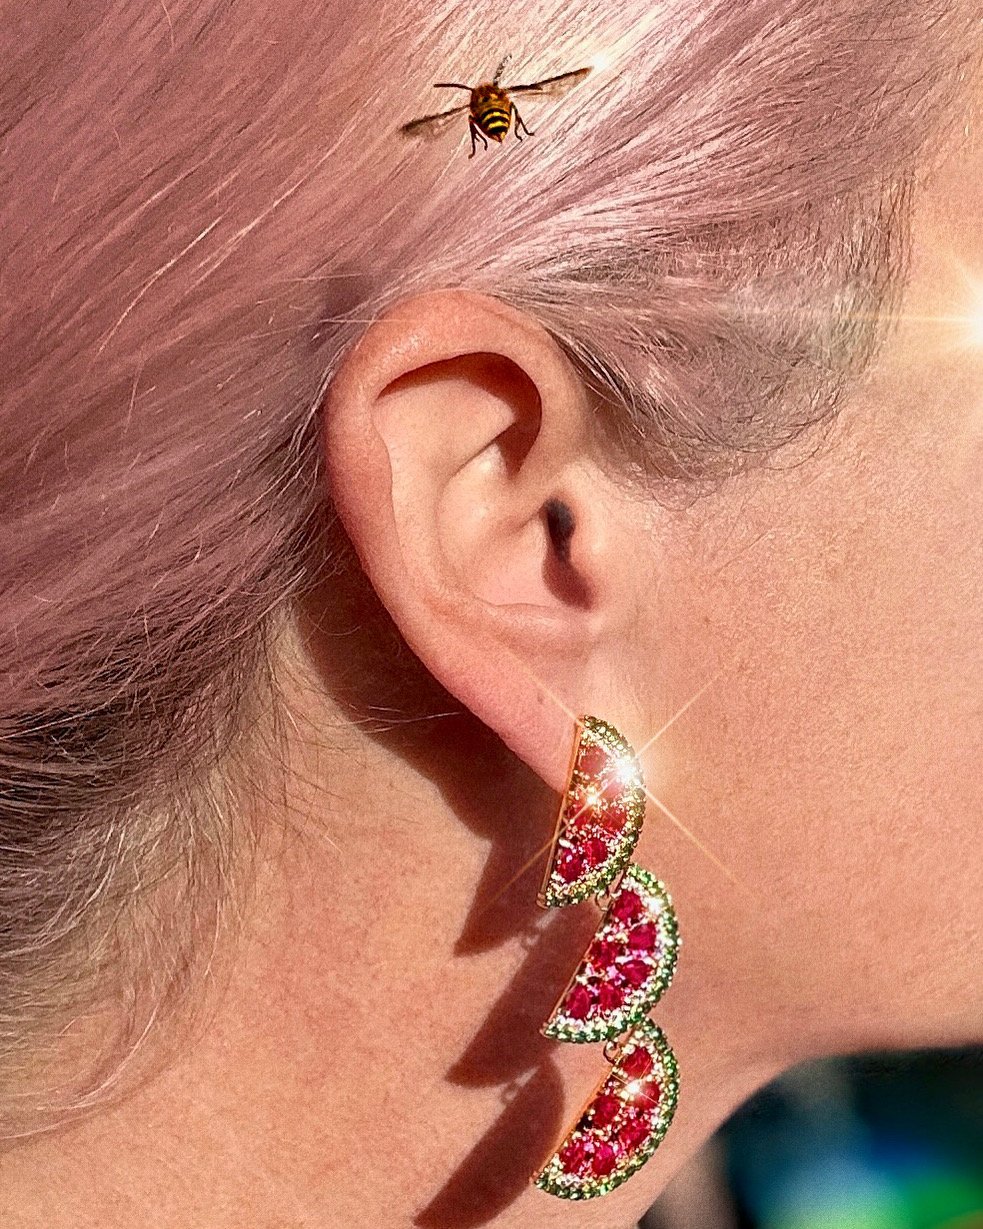   French Girl Aesthetic     Eye Candy LA   watermelon earrings  Location:    Salem, MA    Model:   Debra Macki   